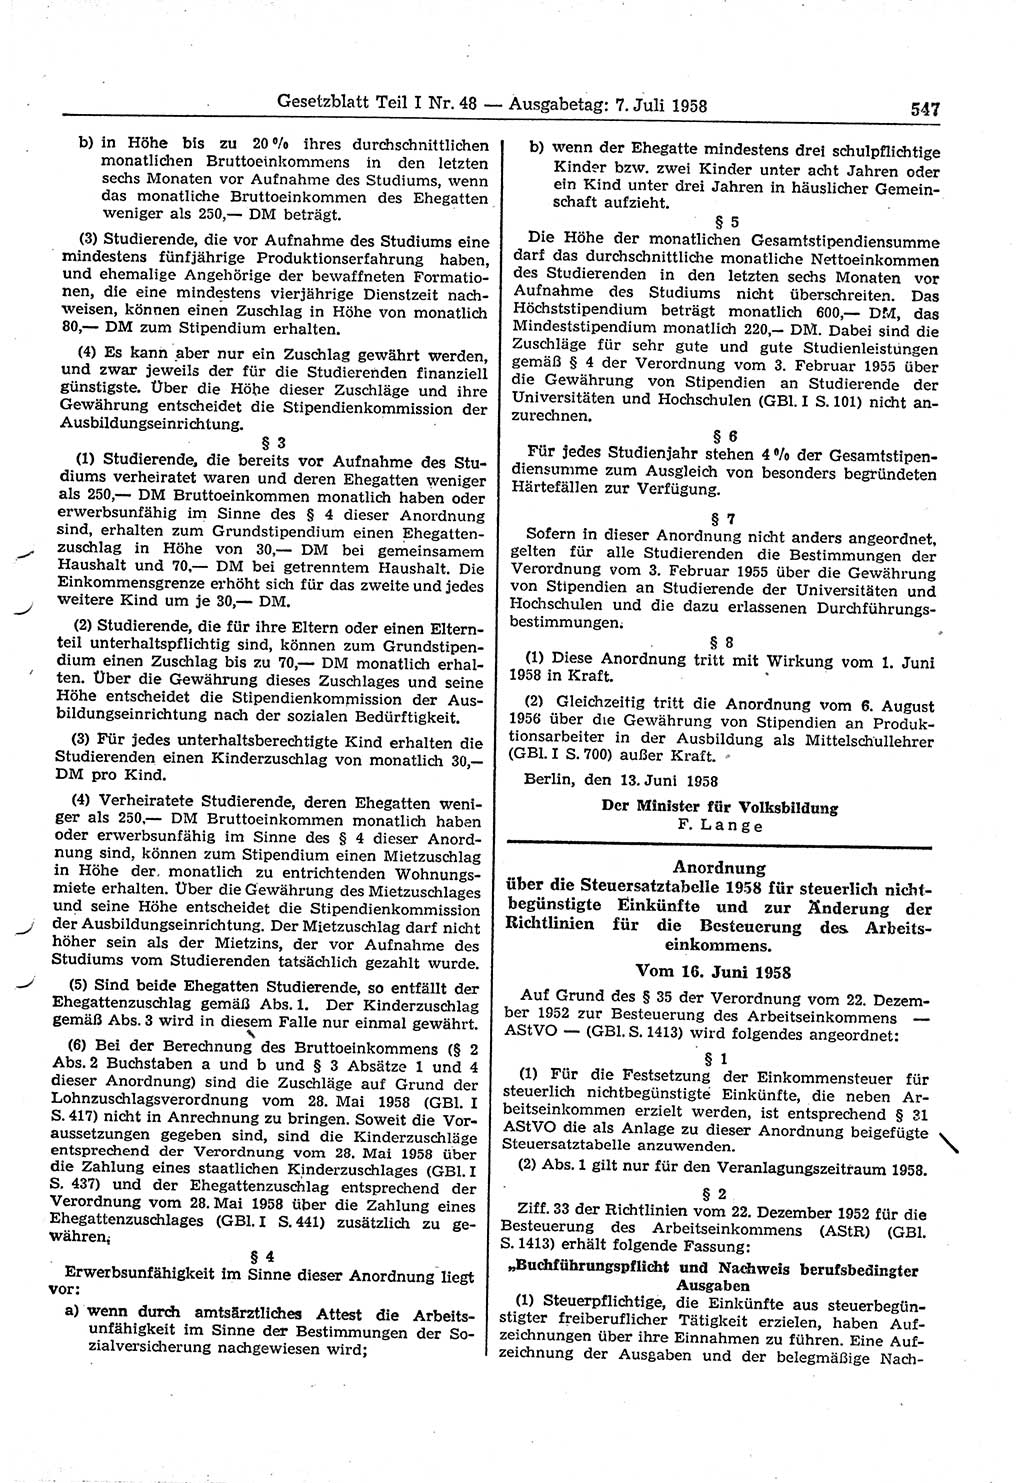 Gesetzblatt (GBl.) der Deutschen Demokratischen Republik (DDR) Teil Ⅰ 1958, Seite 547 (GBl. DDR Ⅰ 1958, S. 547)